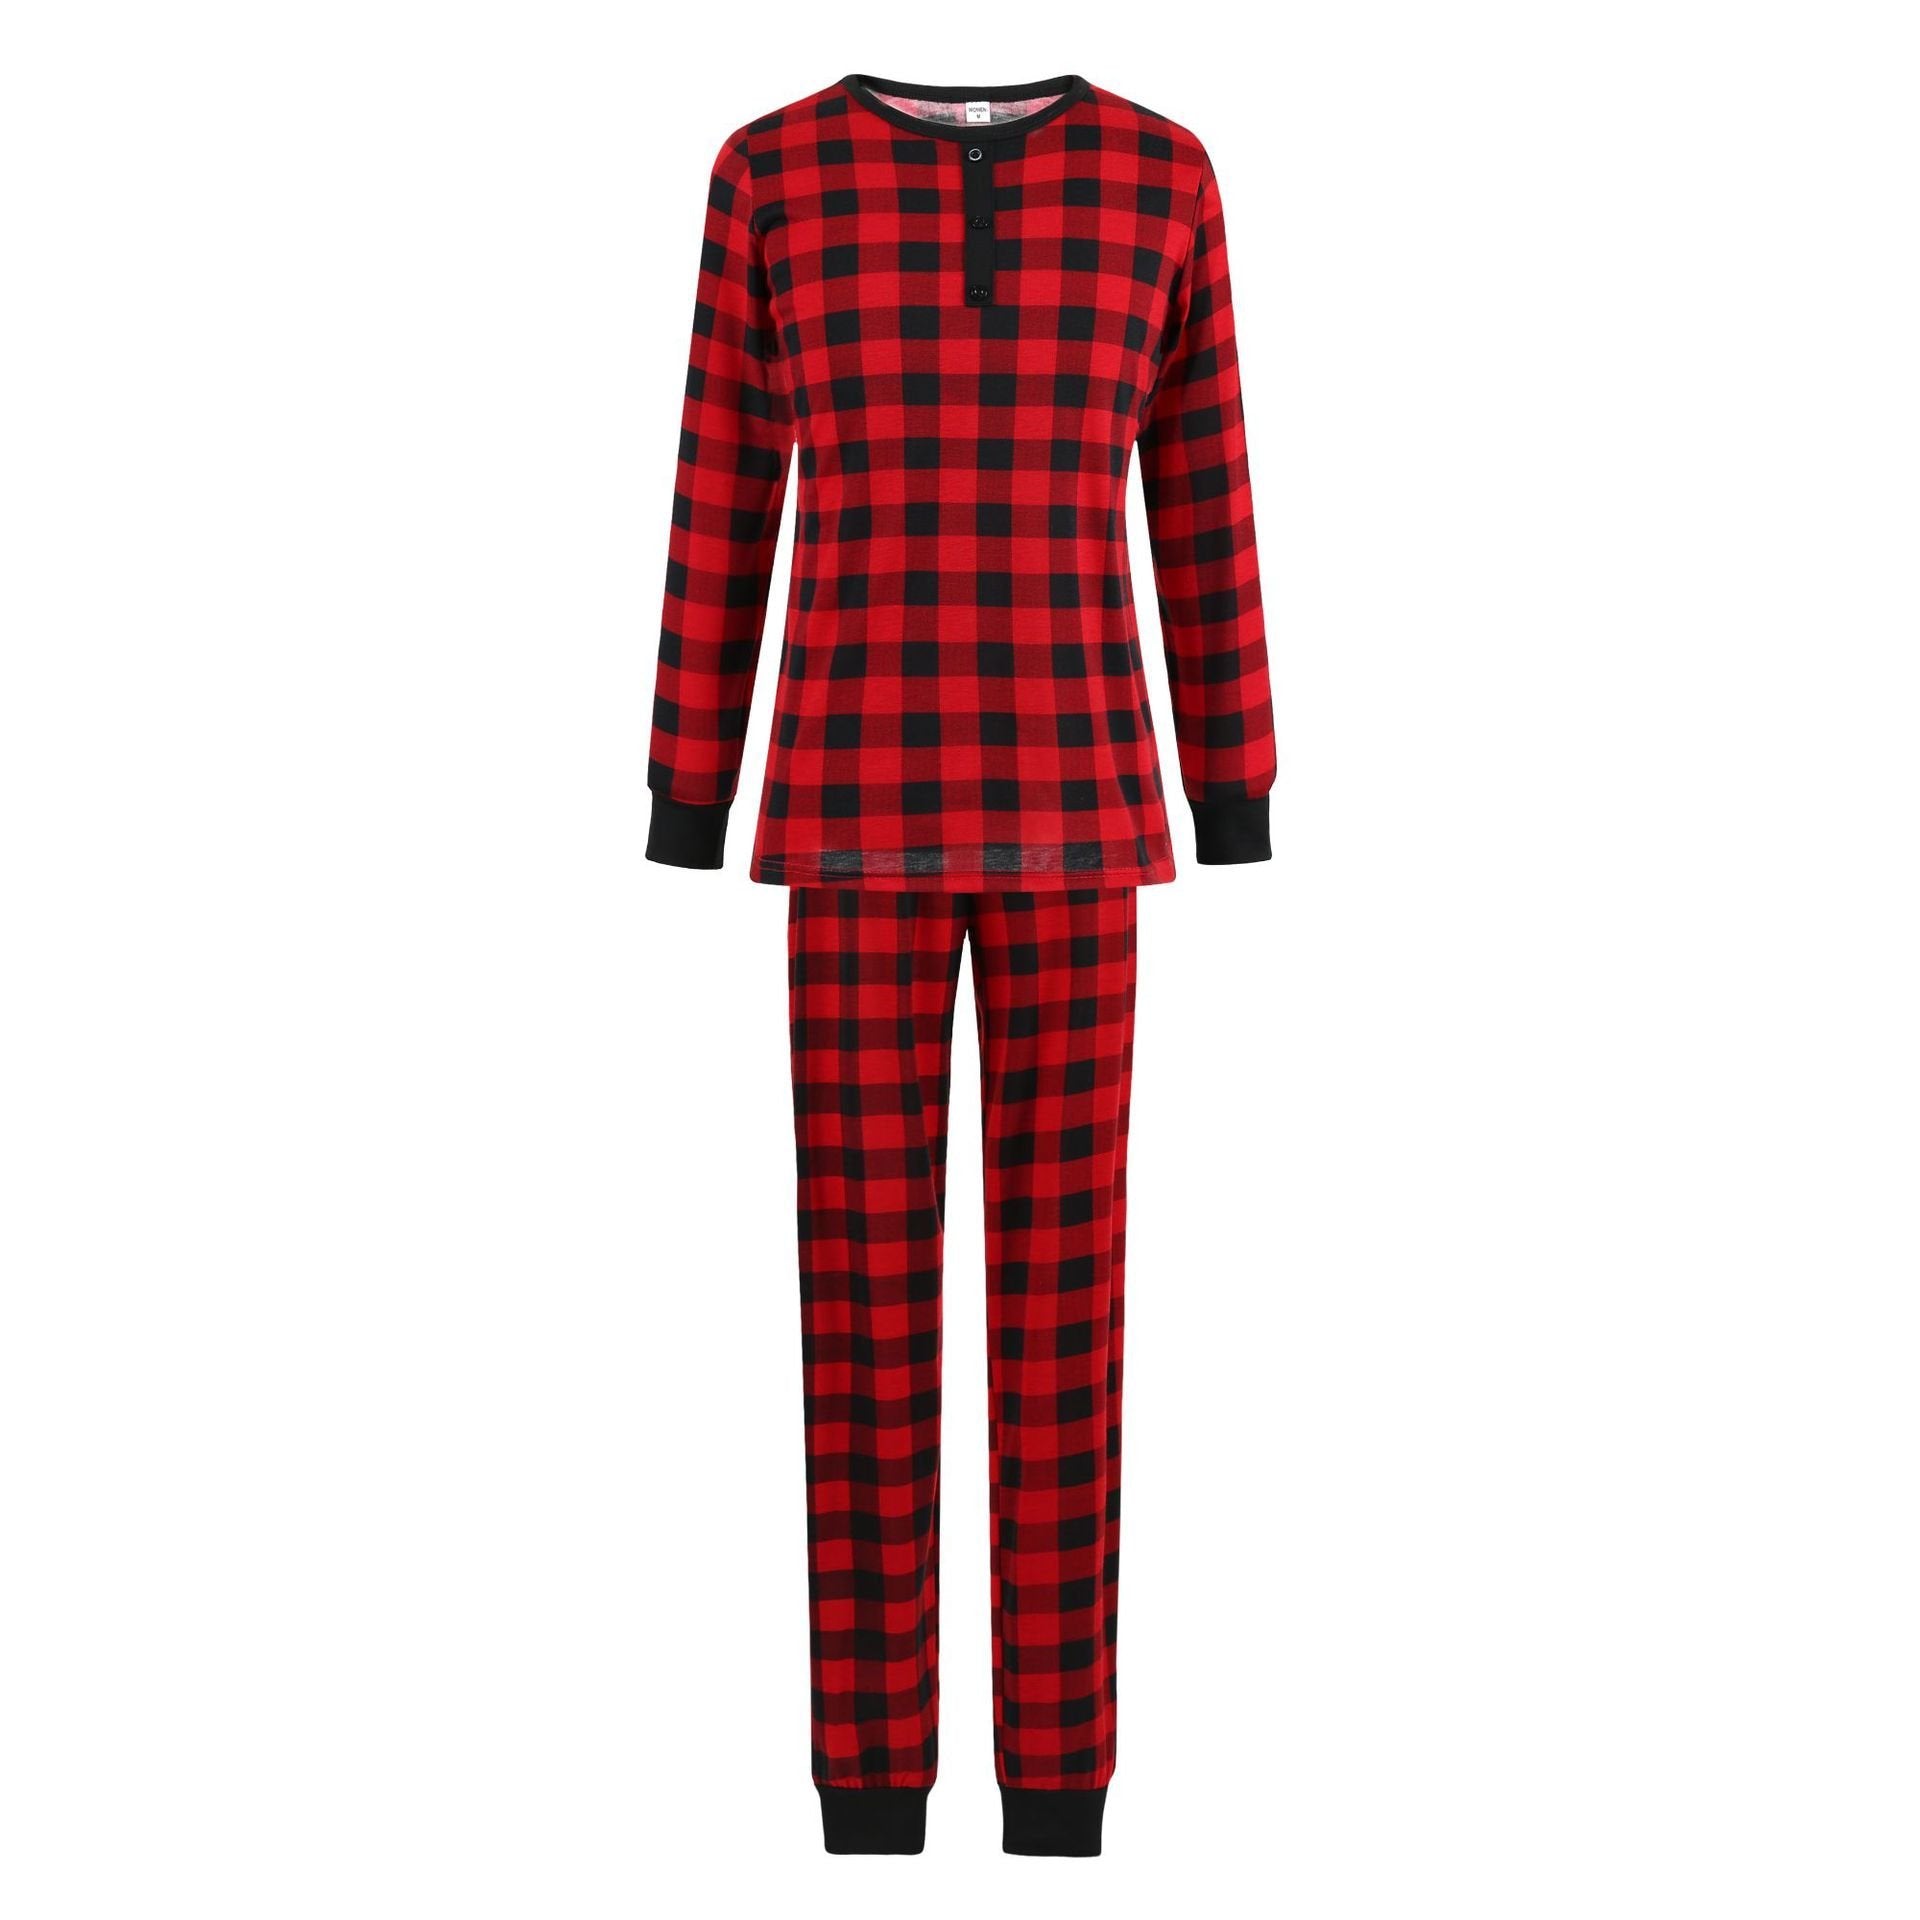 Christmas Family Matching Pajamas Red Plaid Sleepwear Set